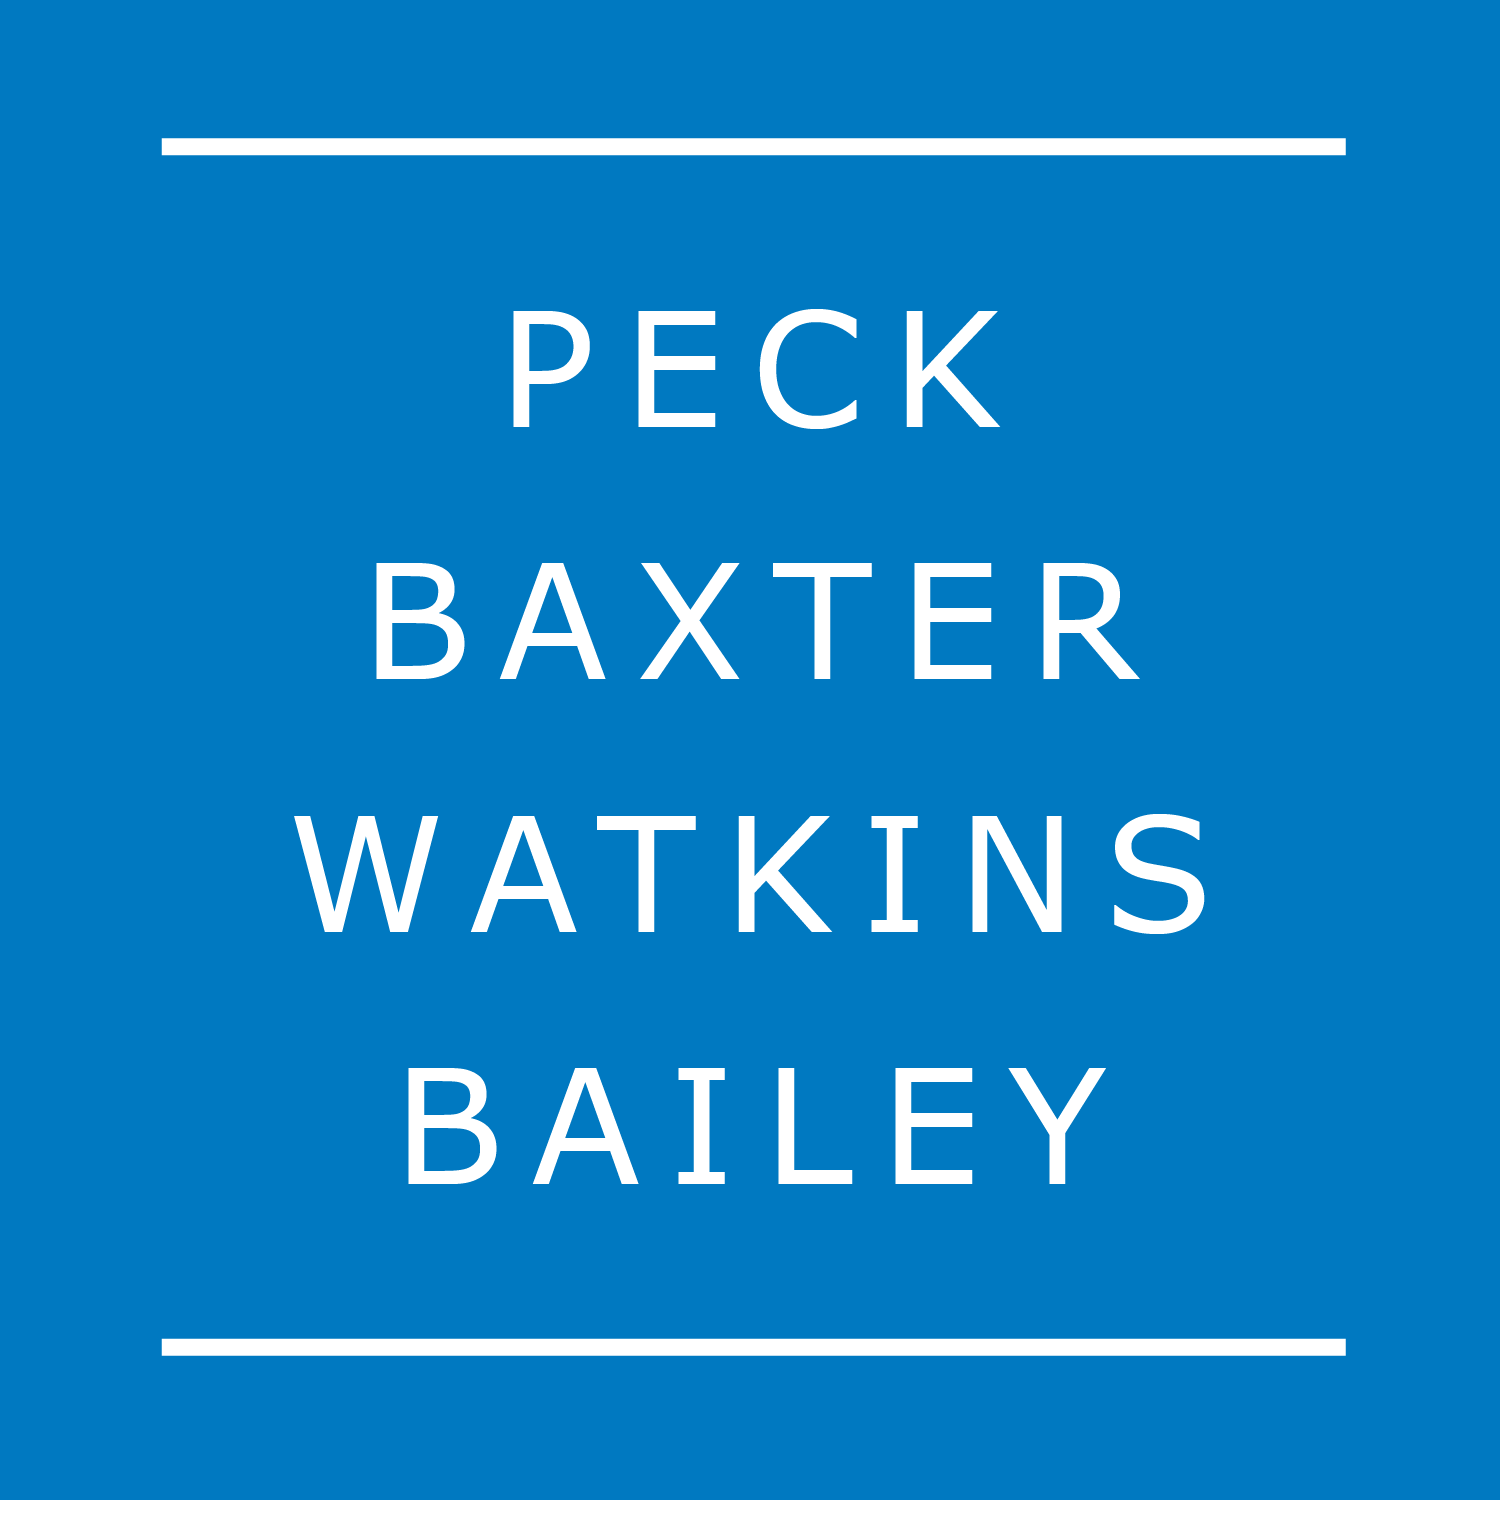 Peck Baxter Watkins & Bailey